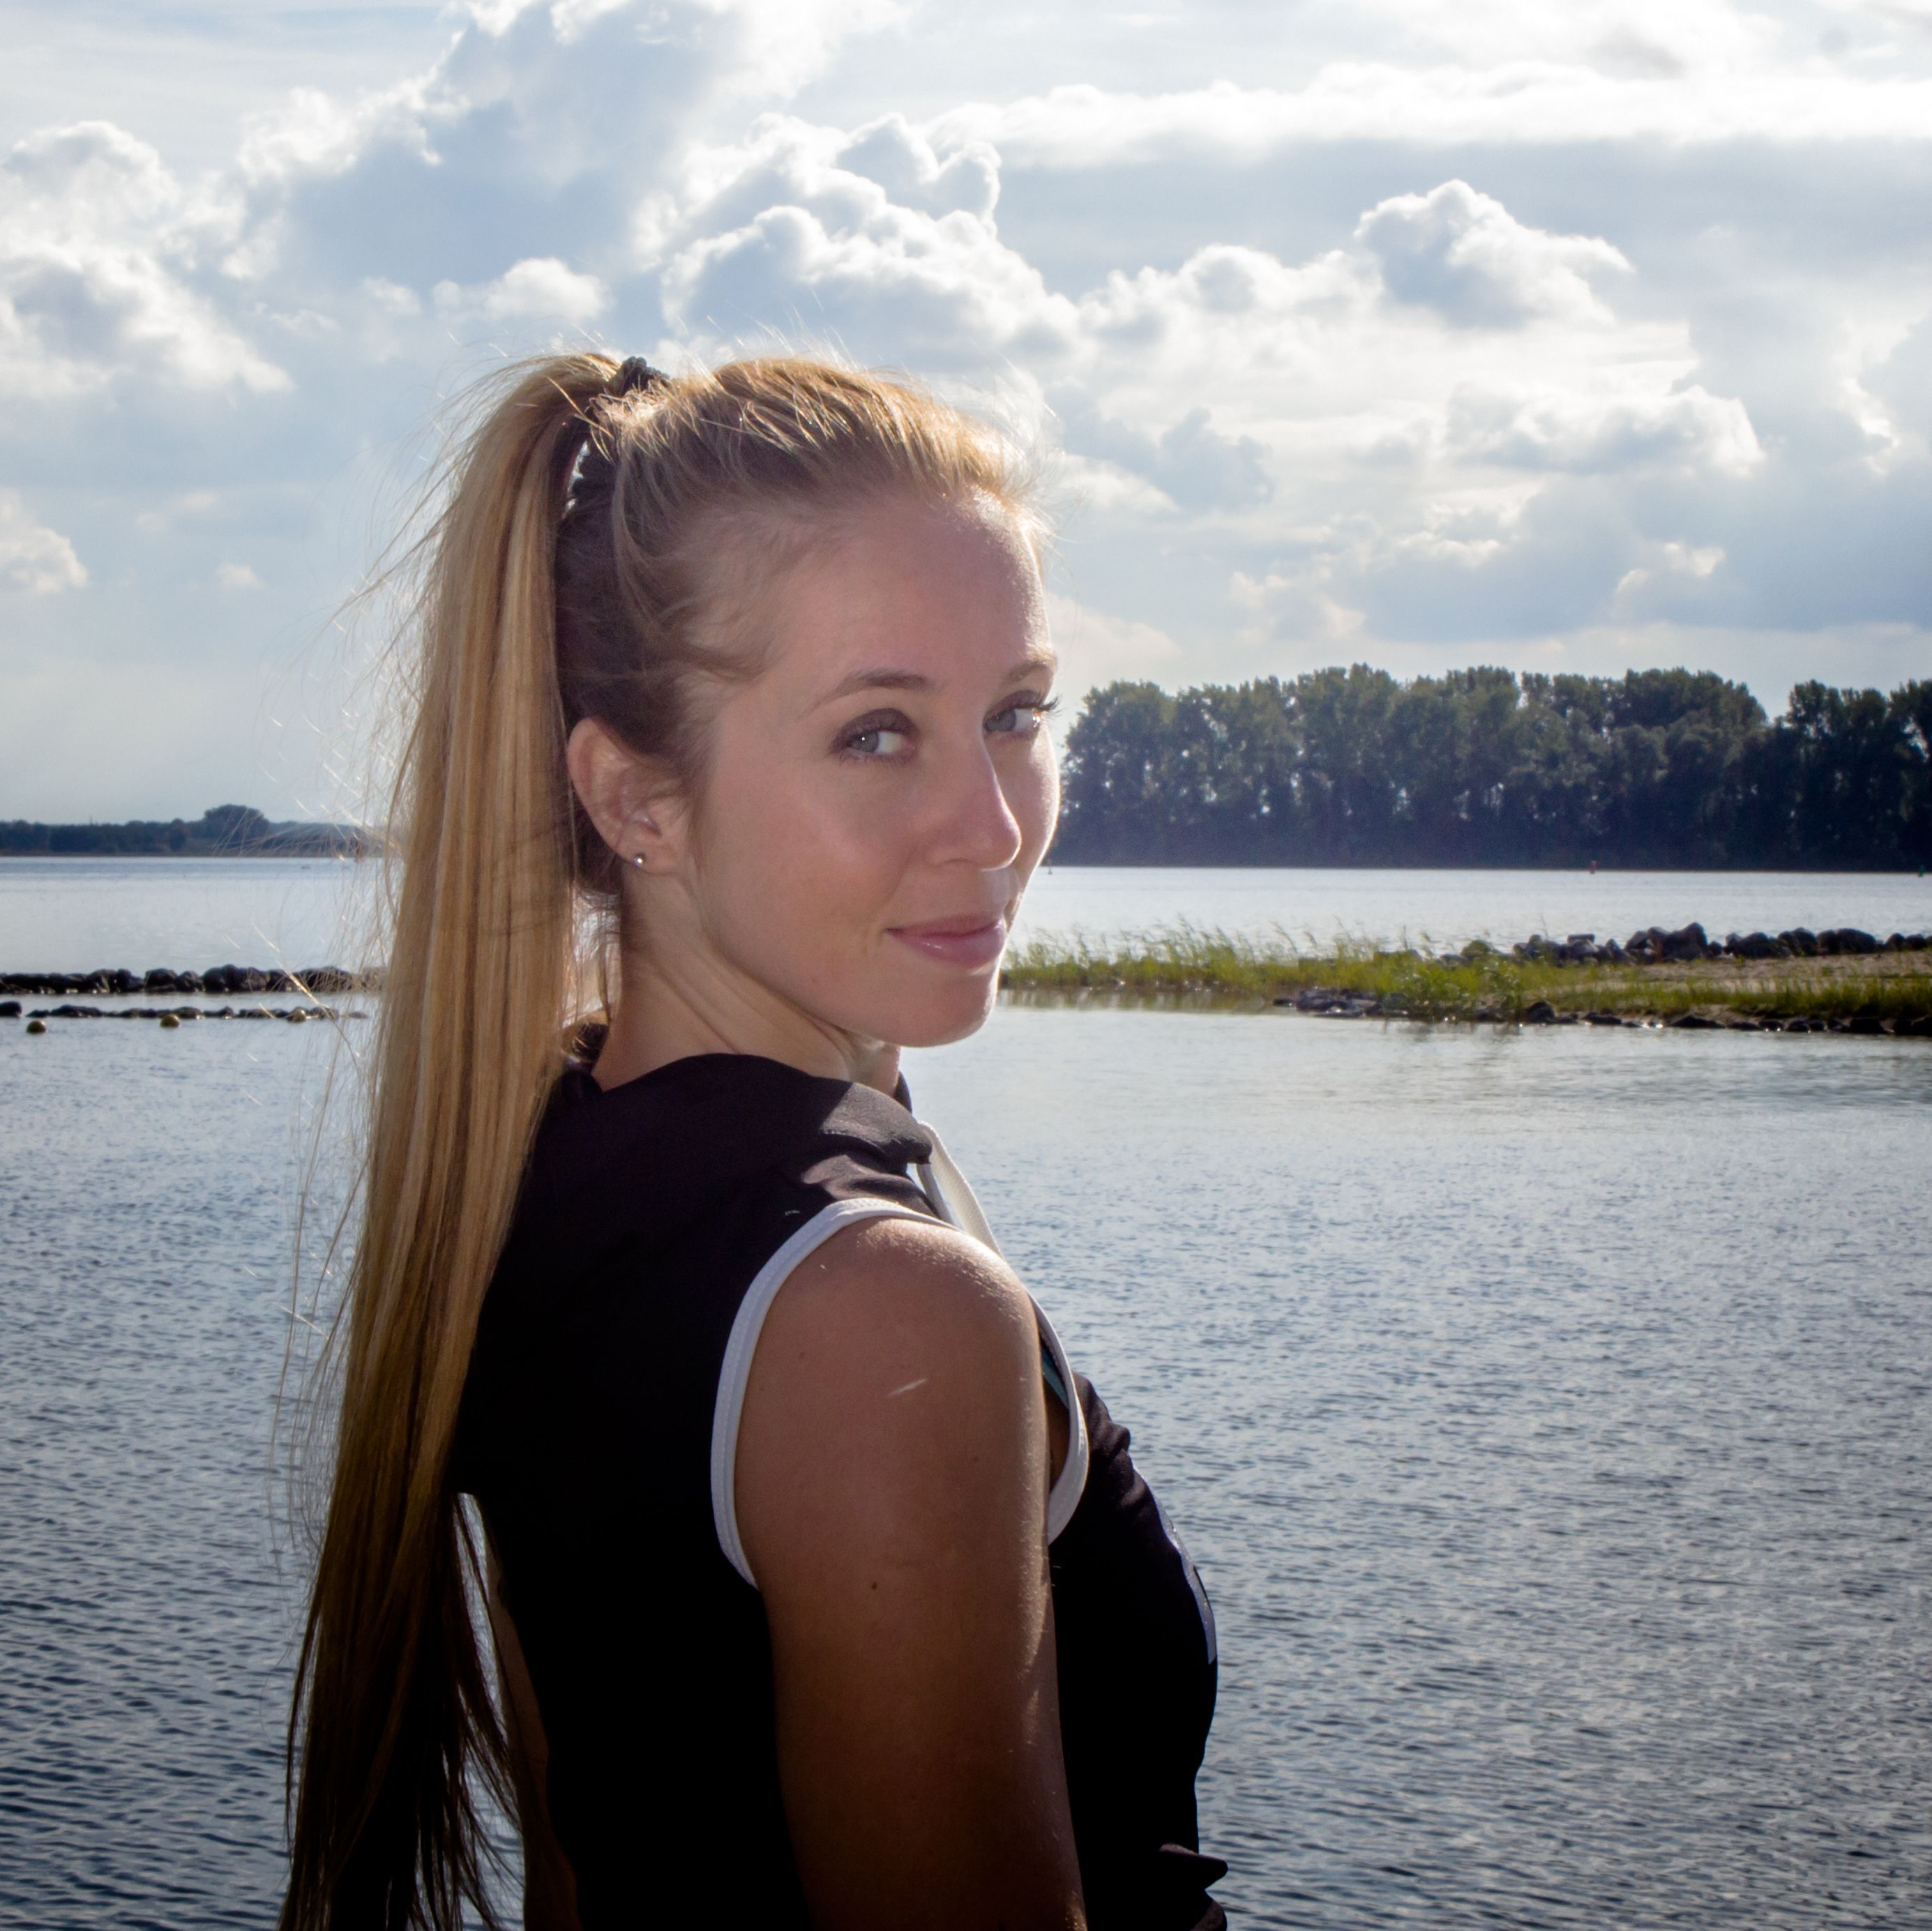 Russian Blonde Teen Webcam - Porn actress career switch helped gymnast Verona van de Leur get her life  back on track | CNN